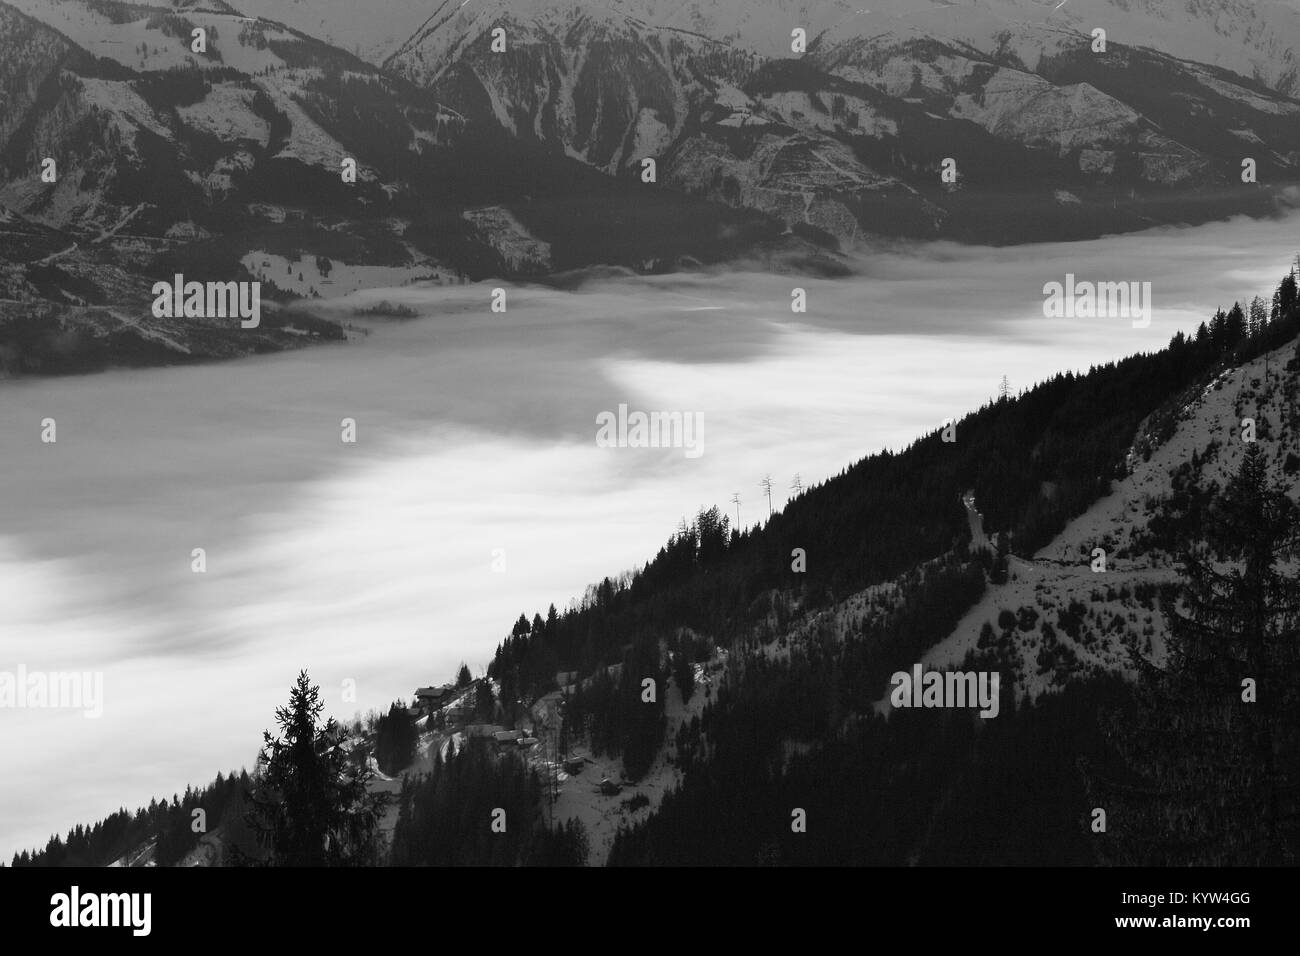 Blick auf die Hohen Tauern mit Kitzsteinhorn (3200m) in der Region Zell am See - Kaprun, im Winter. Österreich, Europa. Stockfoto